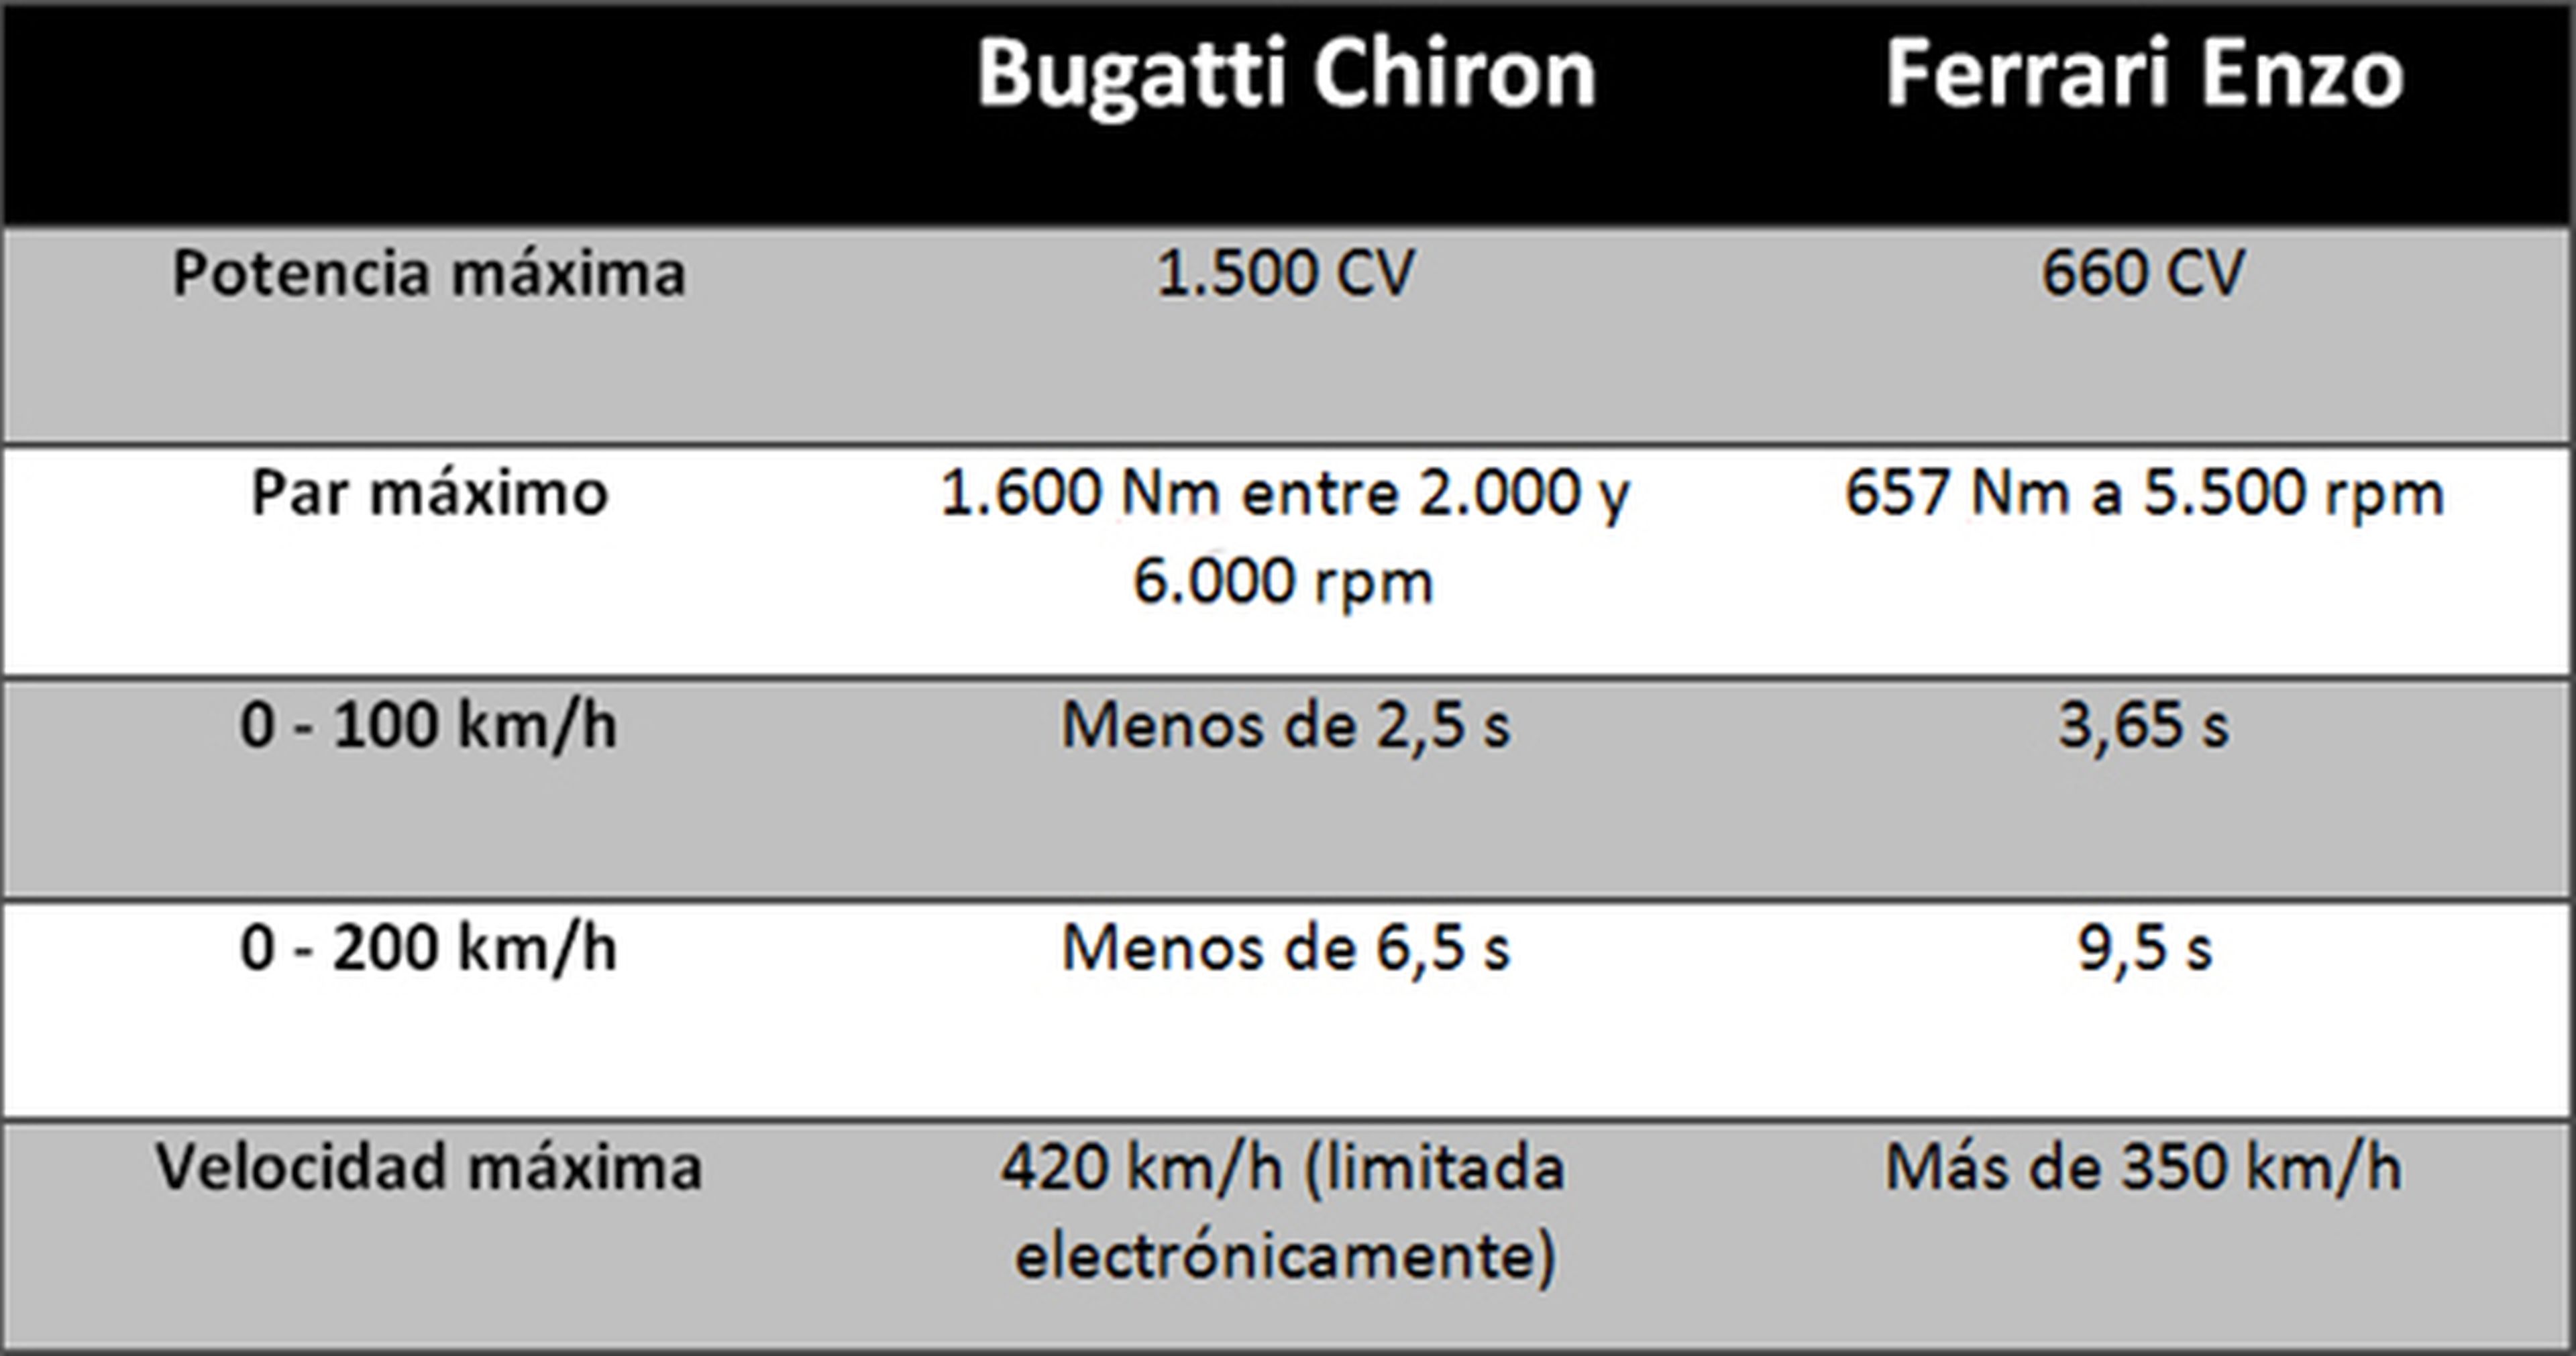 Ferrari Enzo Bugatti Chiron tabla prestaciones